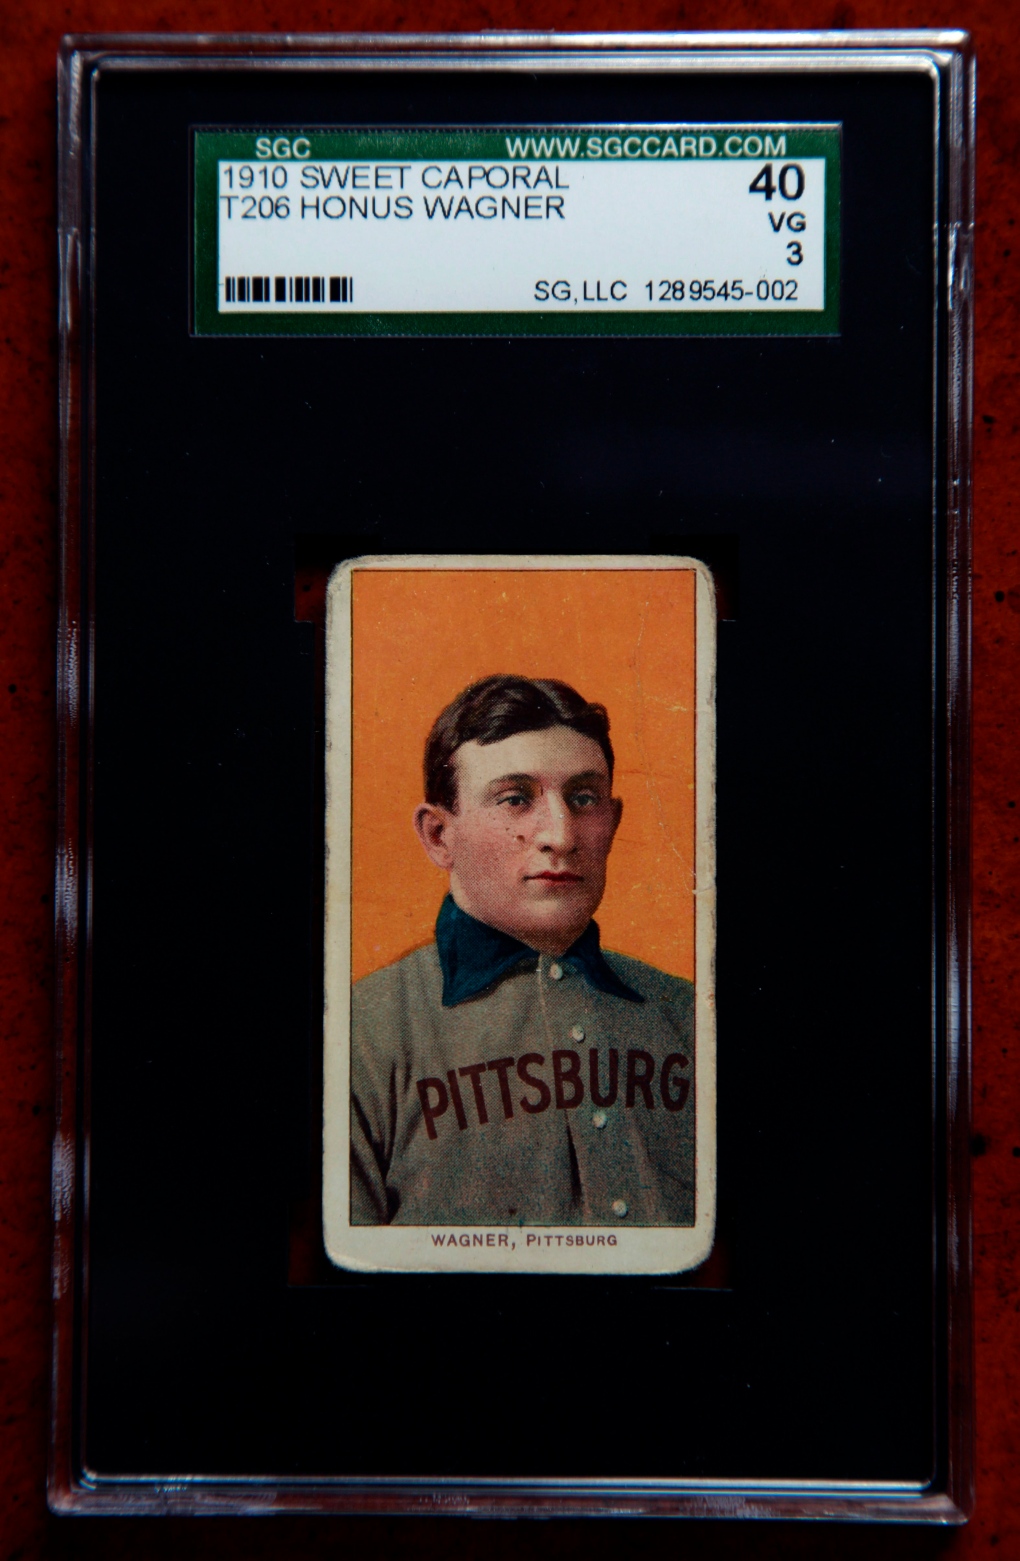 1909 Honus Wagner baseball card sells for $2.1 million